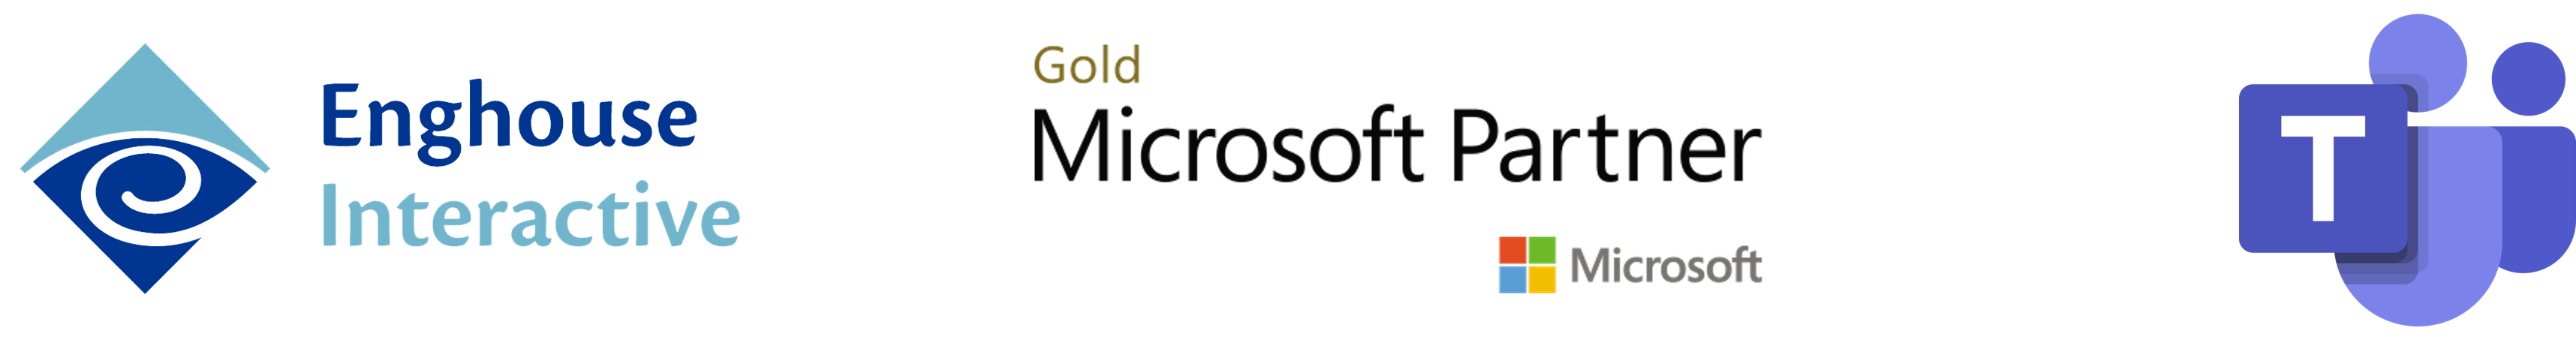 Logos-Enghouse Interactive-Microsoft-Gold-Partner-TeamsLogo